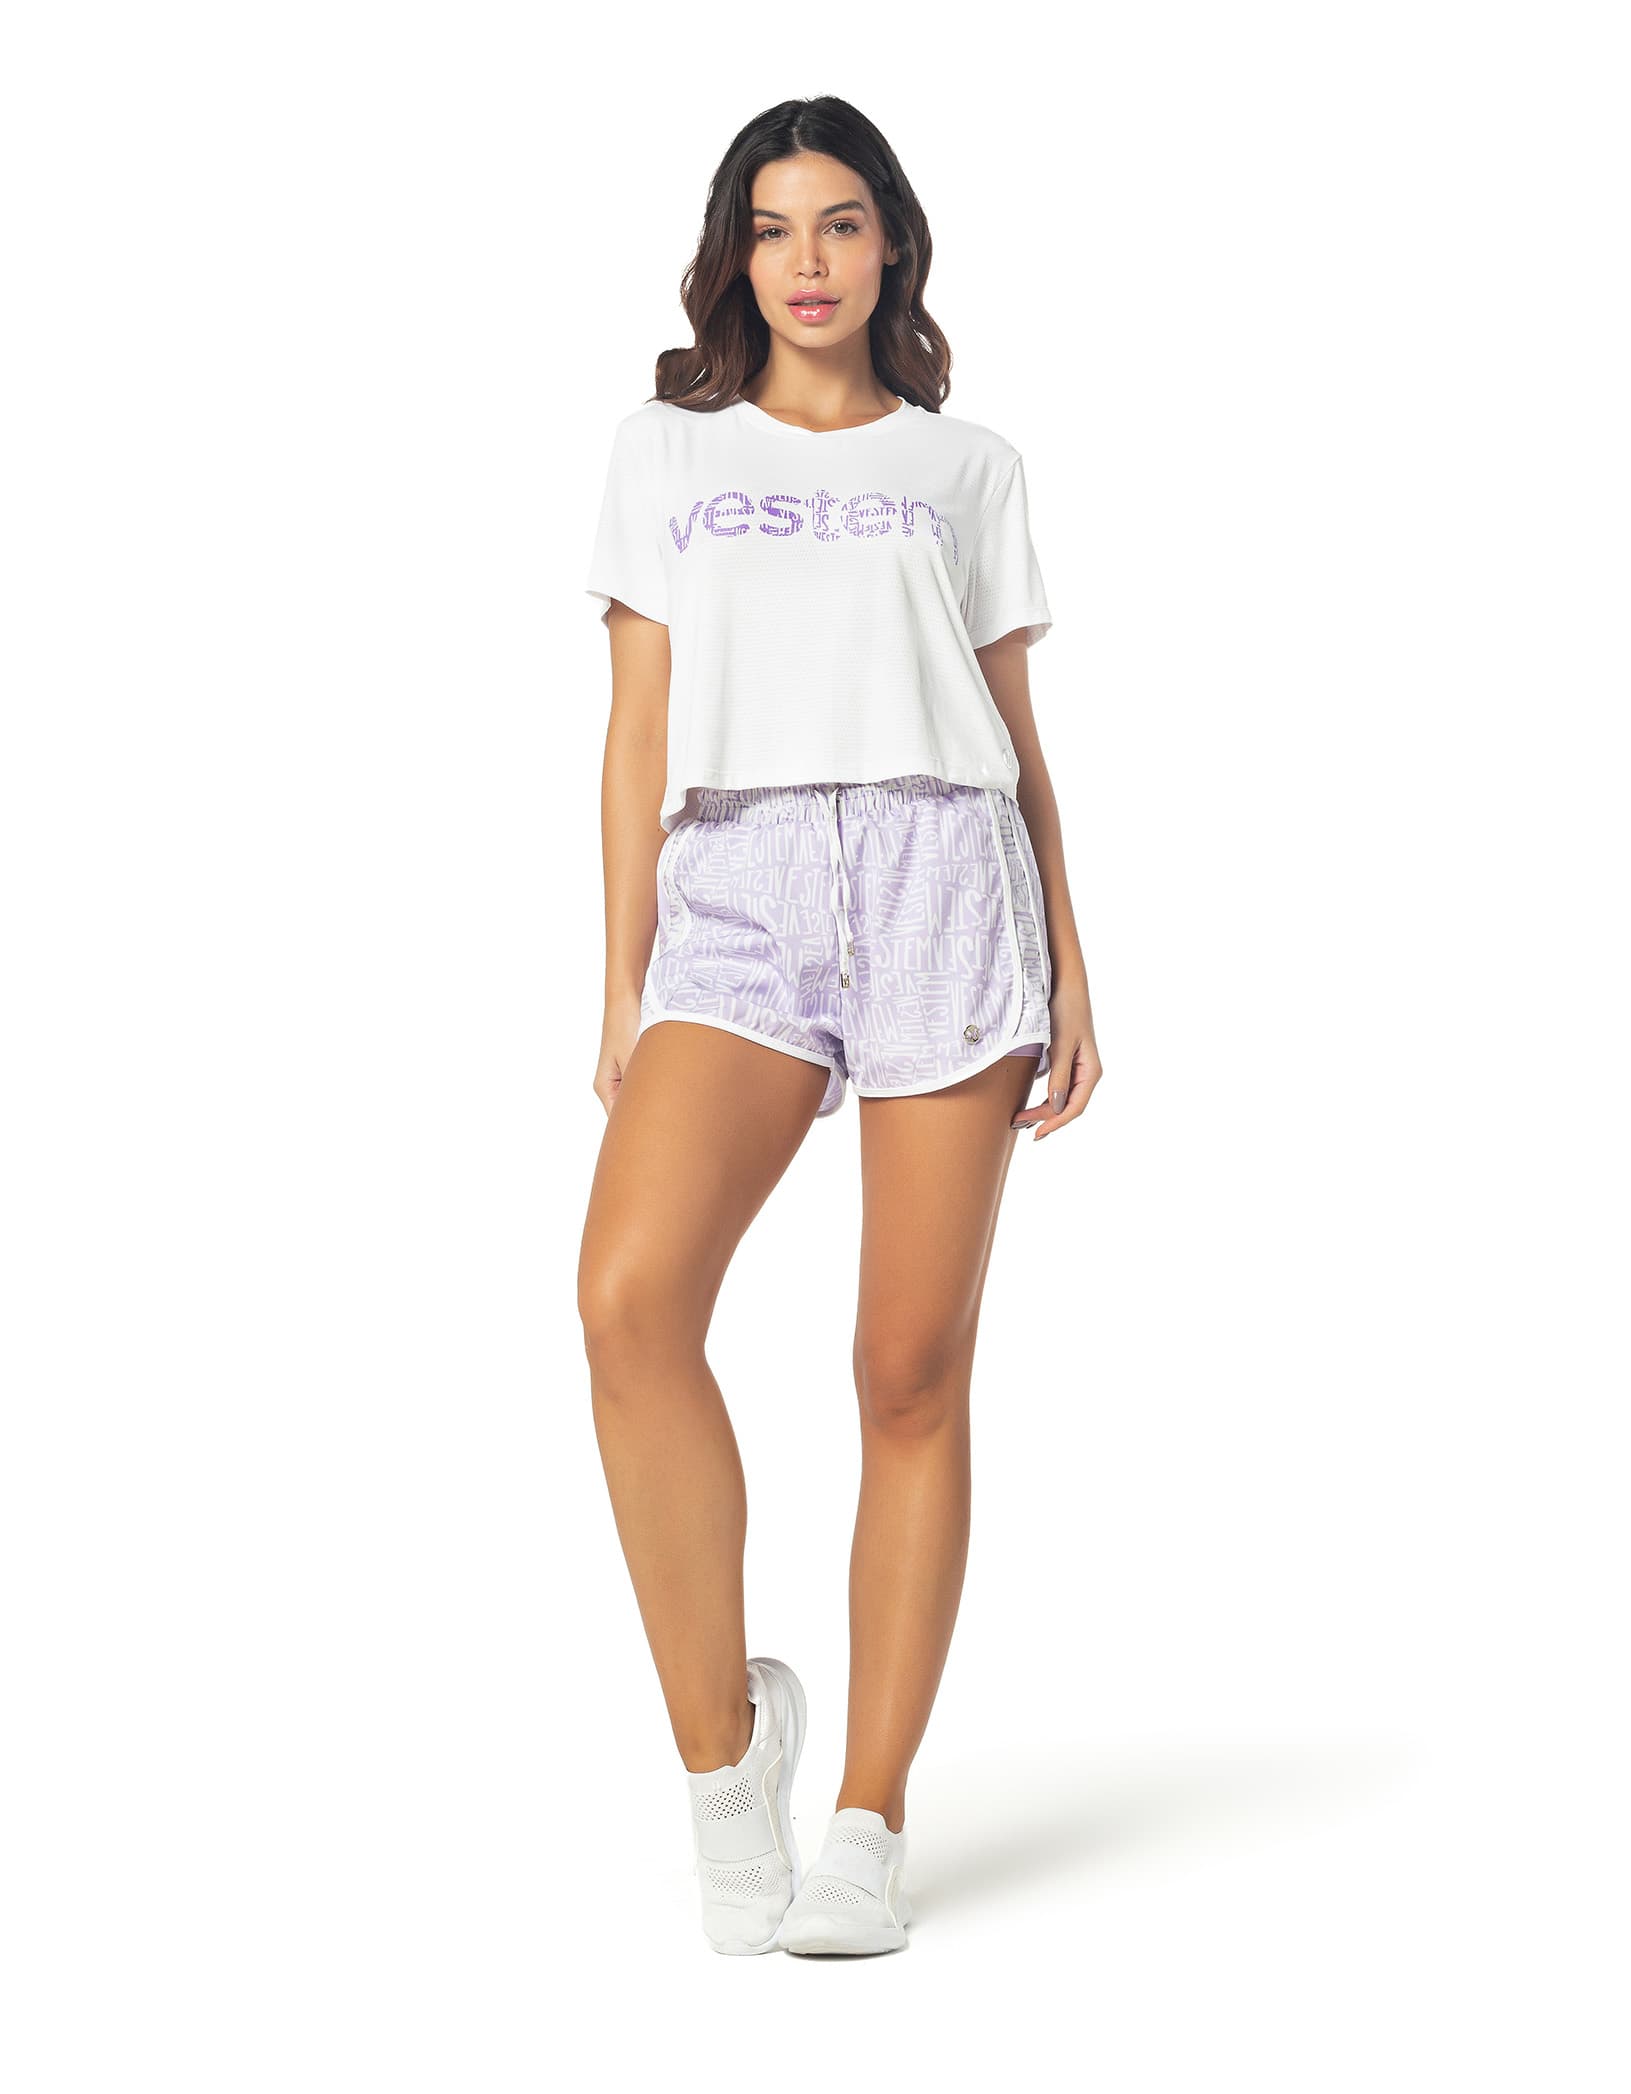 Vestem - Murriel Mini Lilac Harmony With White Shorts - SH473E1100